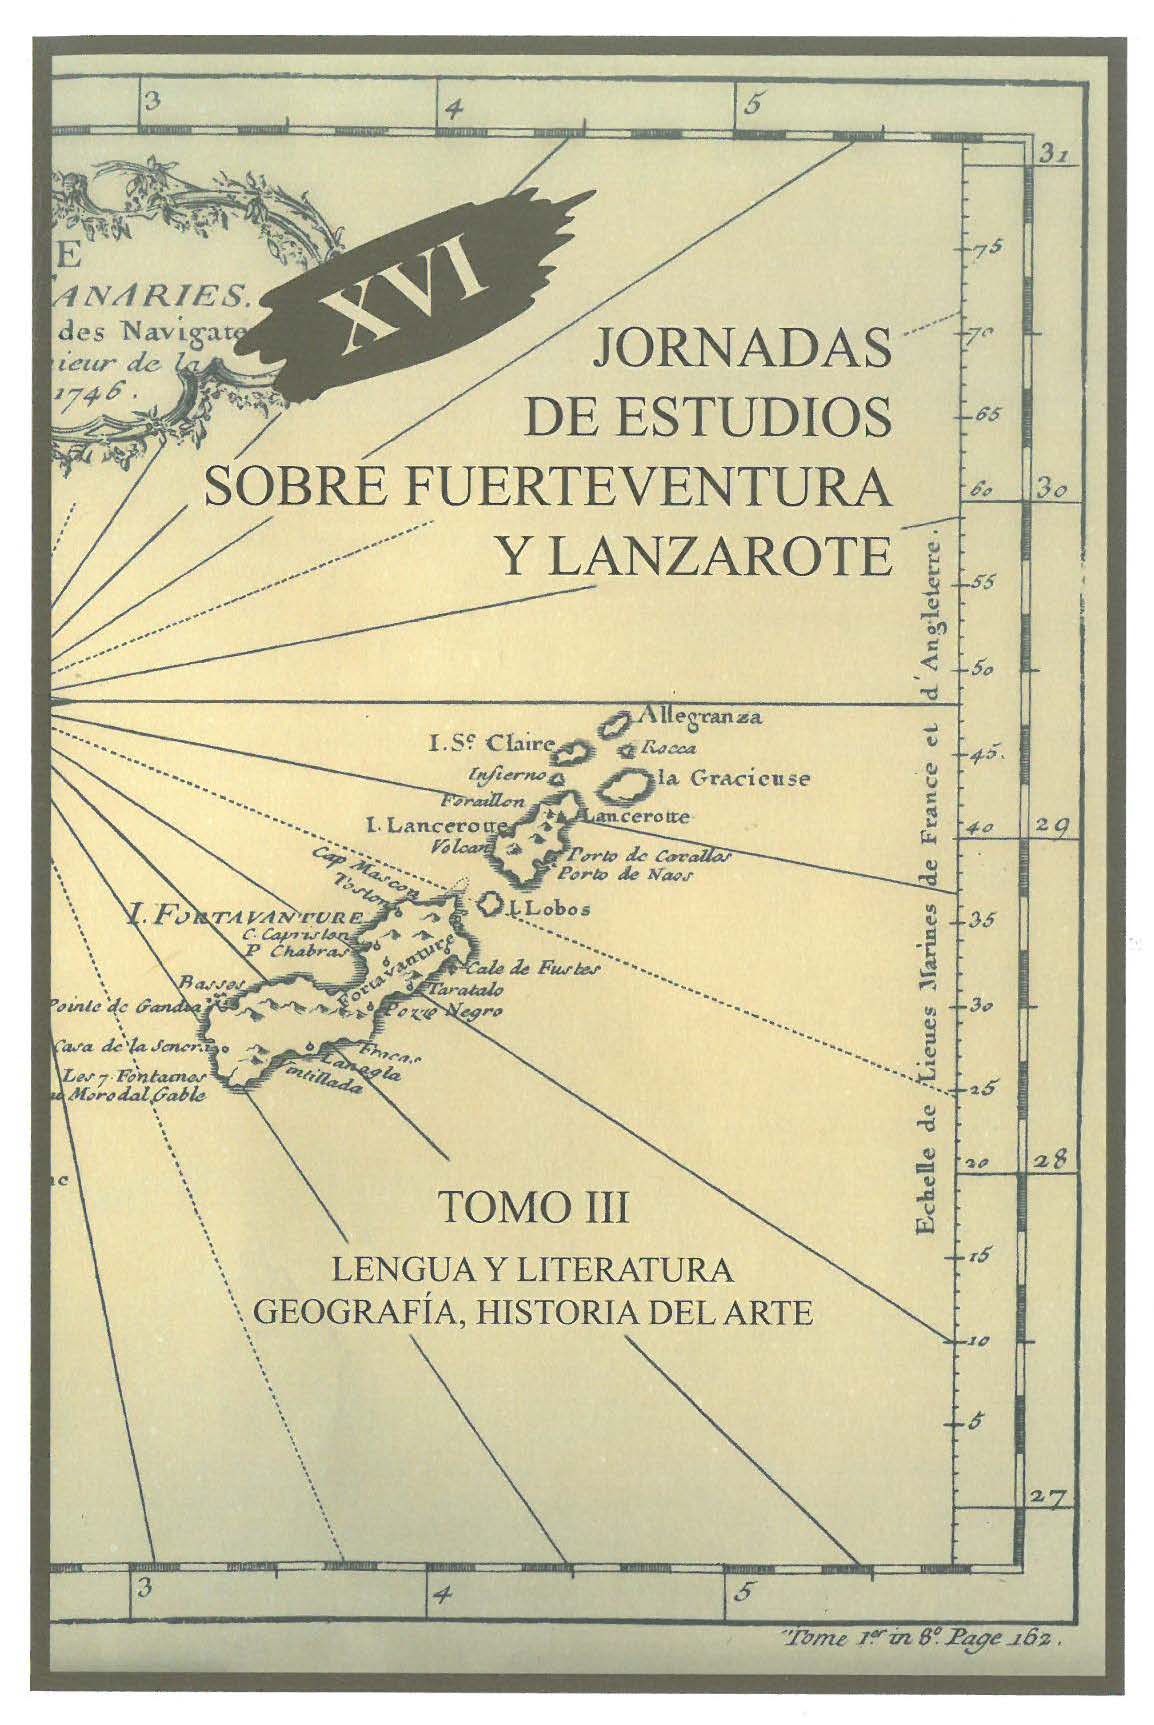 Canarias en la II Bienal Hispanoamericana de Arte (La Habana, 1954): arte, historia y política